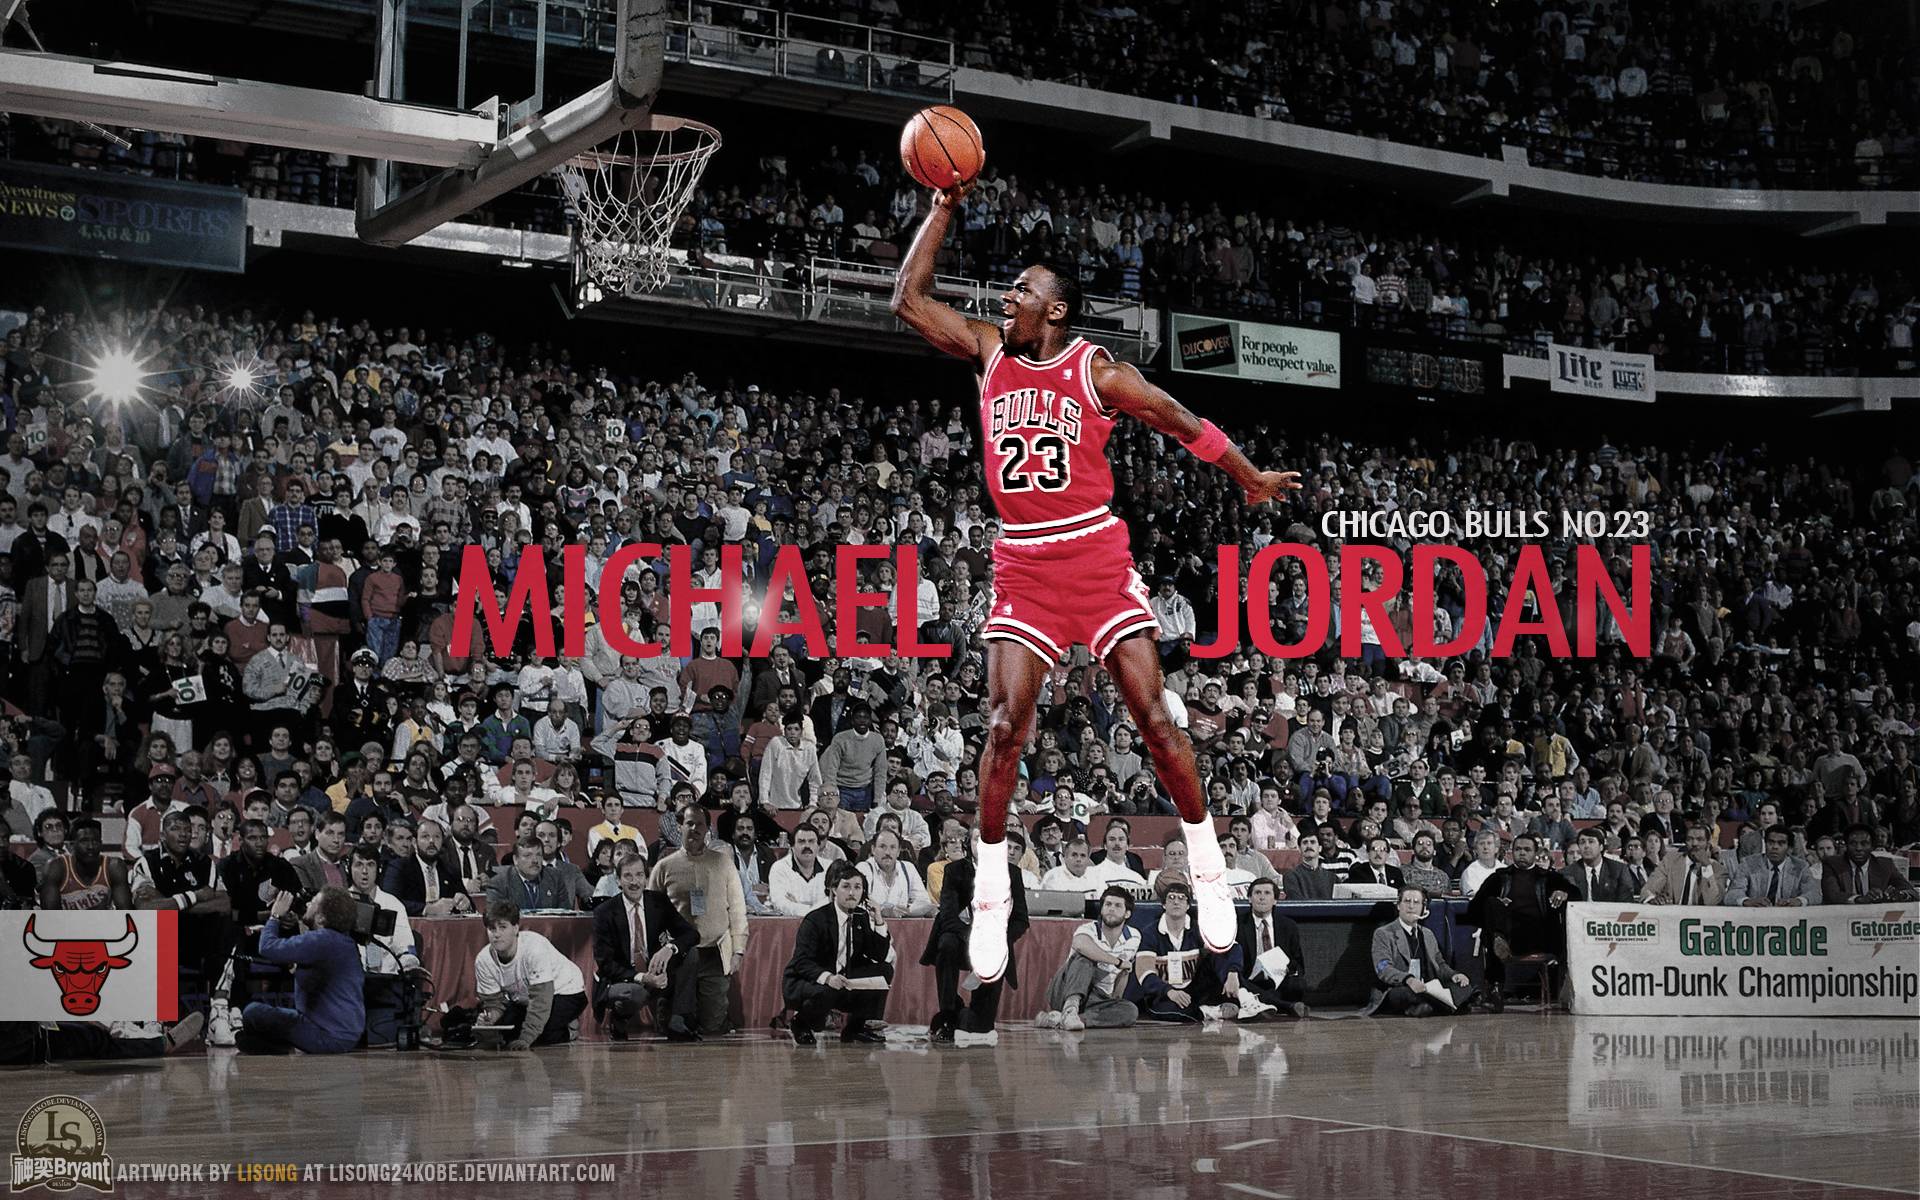 Michael Jordan Wallpaper HD Image 6 HD Wallpaper. Hdimges